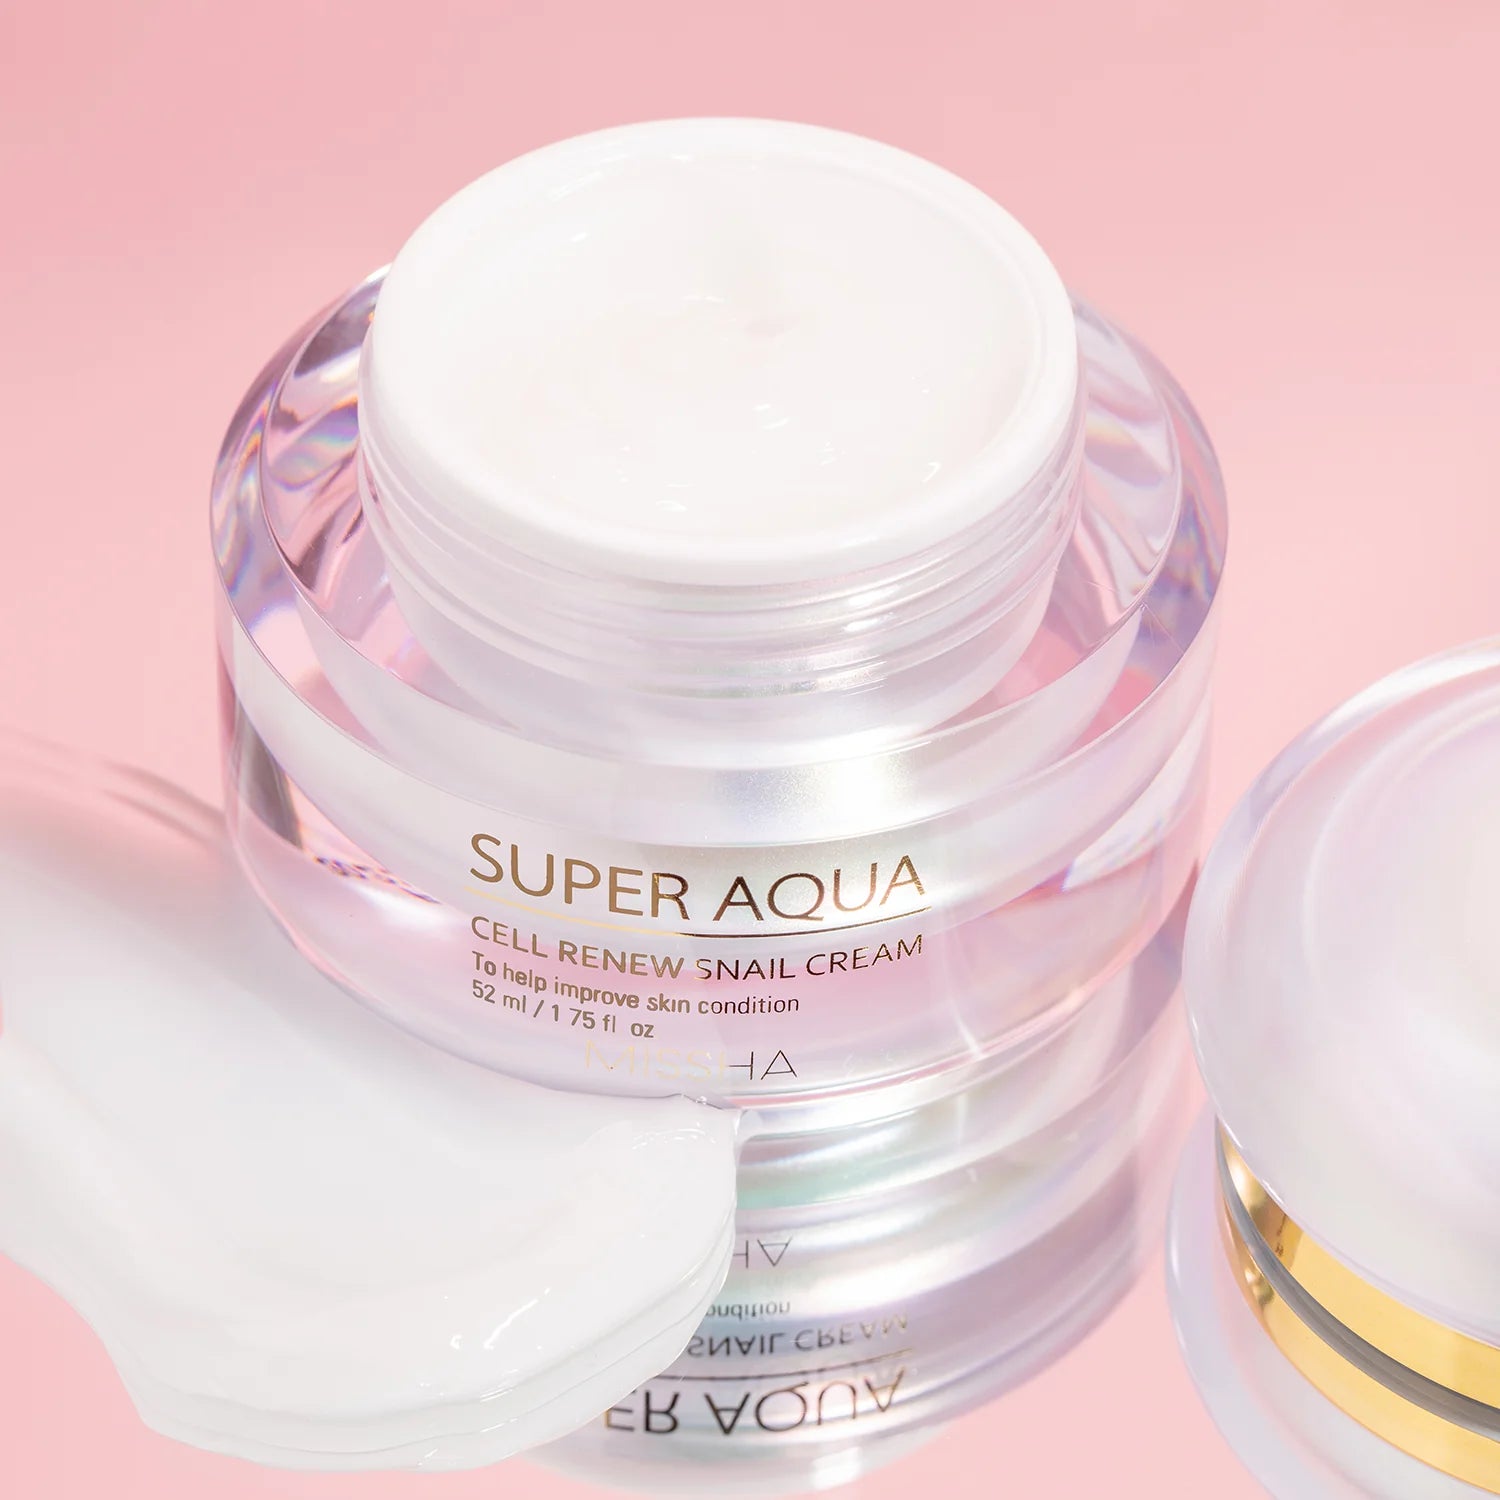 Super Aqua Cell Renew Snail Cream Missha